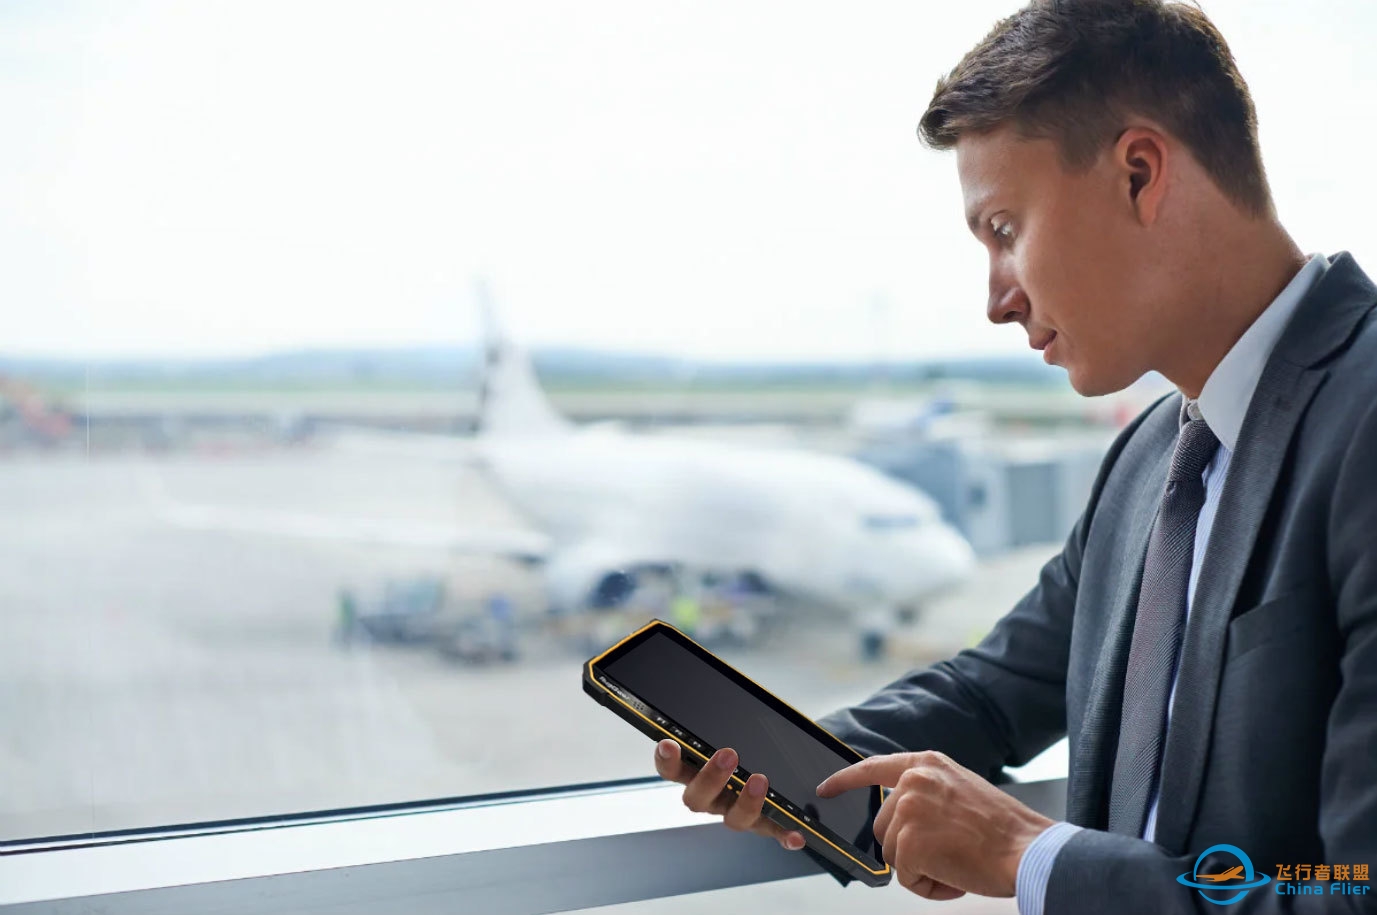 平板电脑如何接管航空旅游行业？-9625 